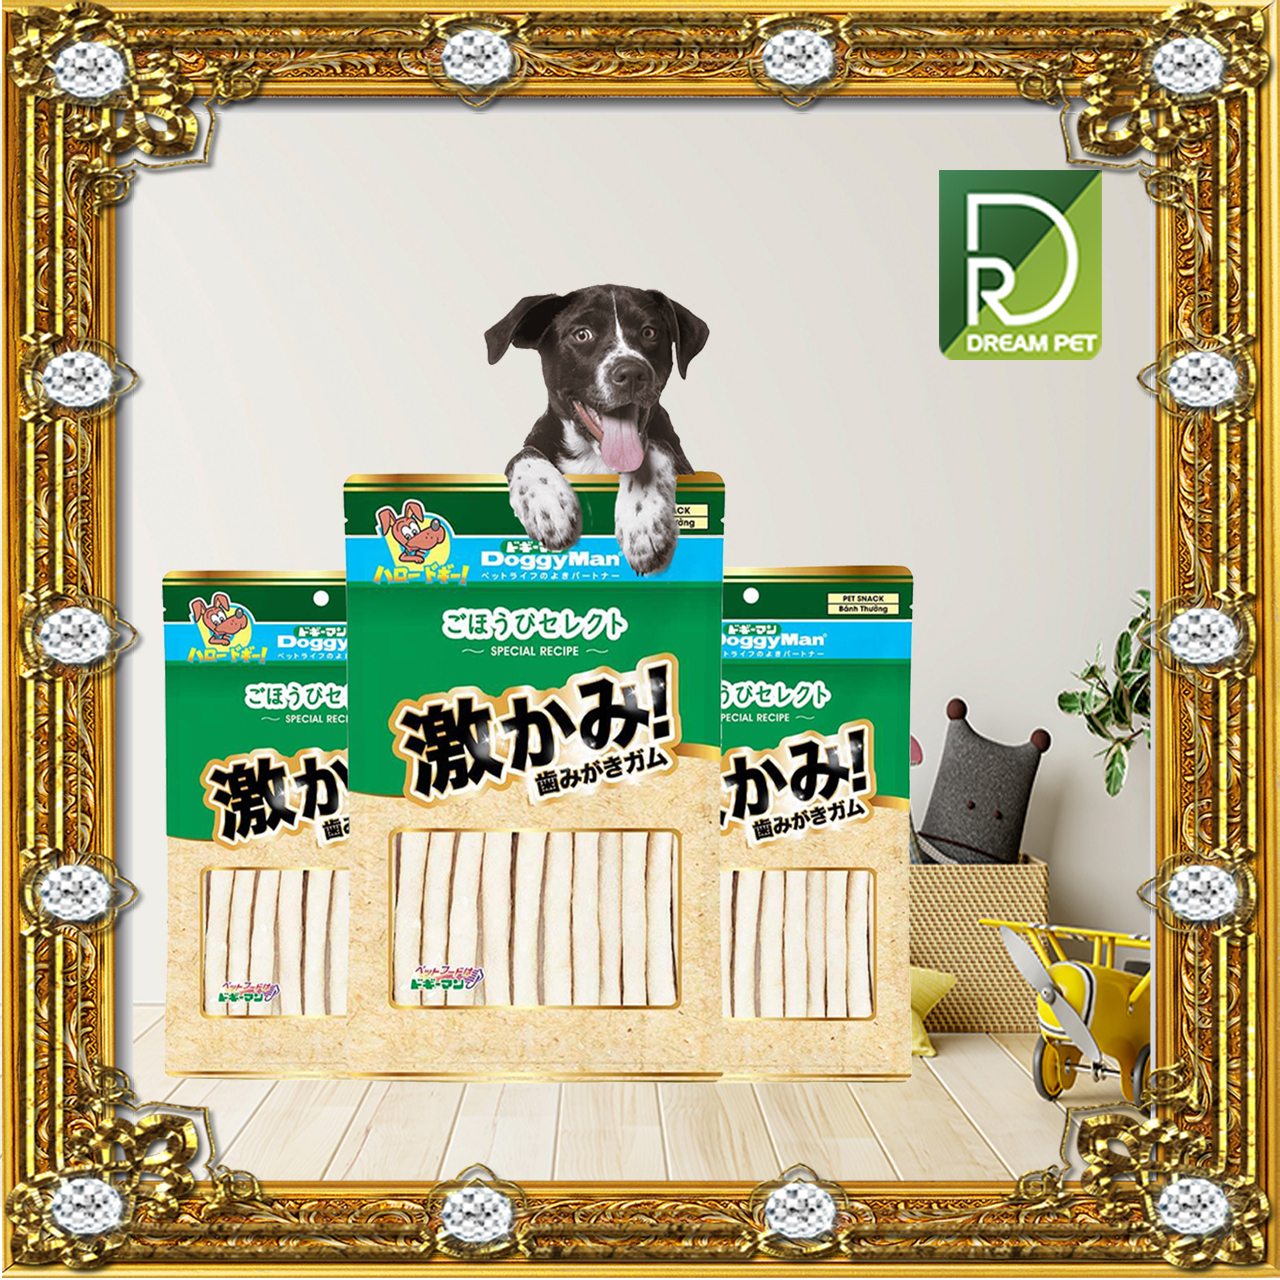 [Bánh Thưởng Cho Chó] Que da bò sáp ong cho chó Doggy Man 350Gr, thức ăn thưởng cho cún